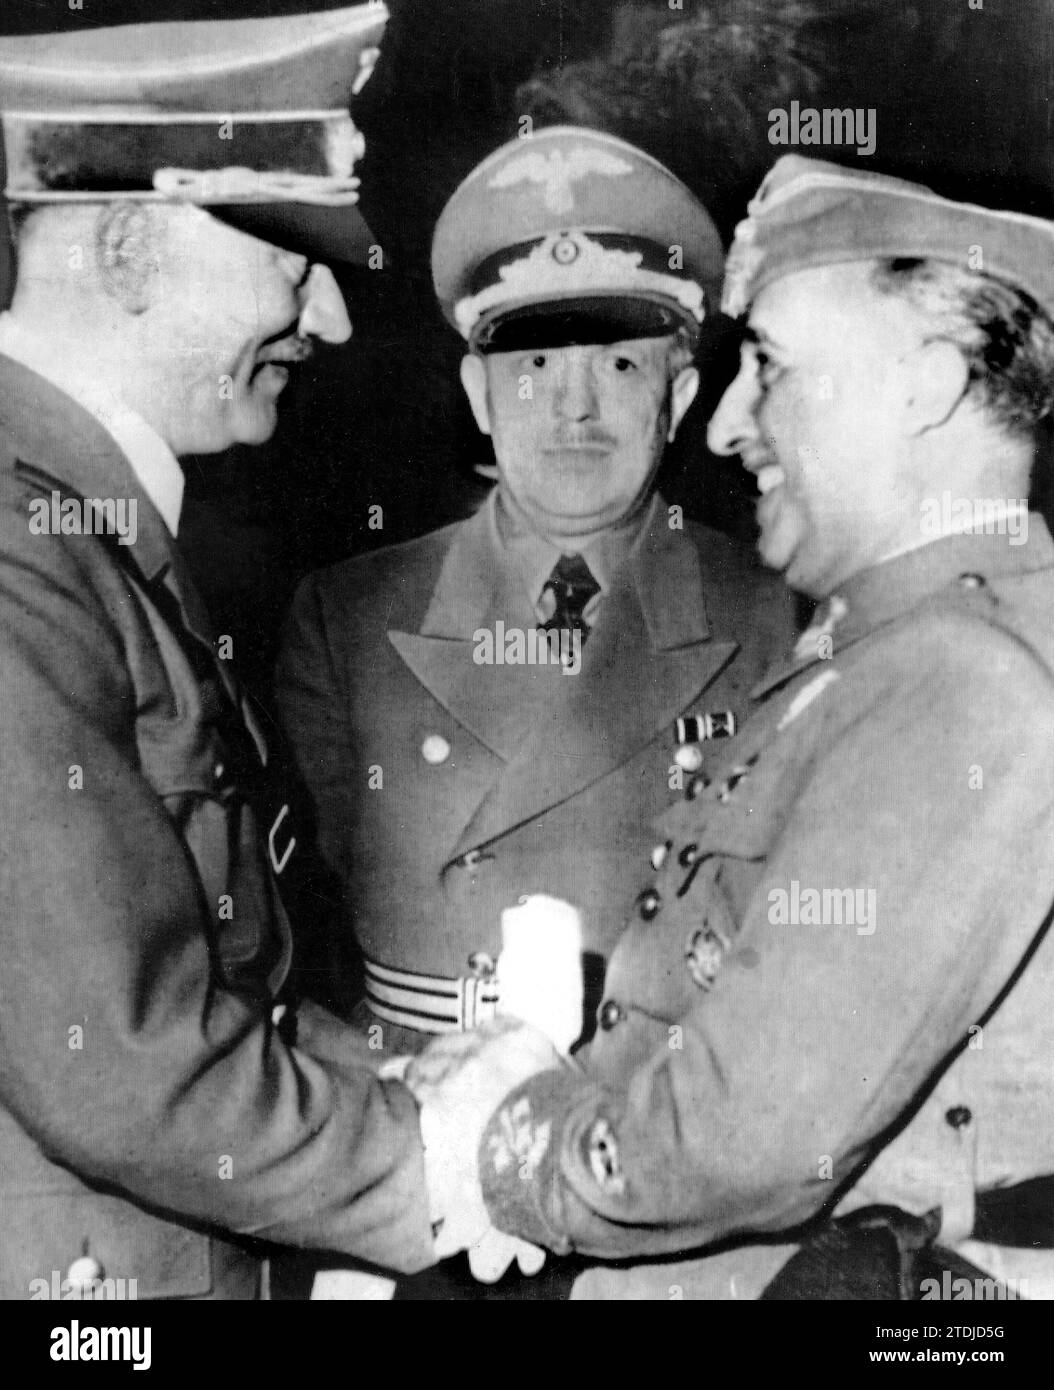 10/22/1940. Interview mit Hendaye. Hitler und Franco verabschieden sich auf der Plattform mit einem Handschlag. Quelle: Album/Archivo ABC Stockfoto